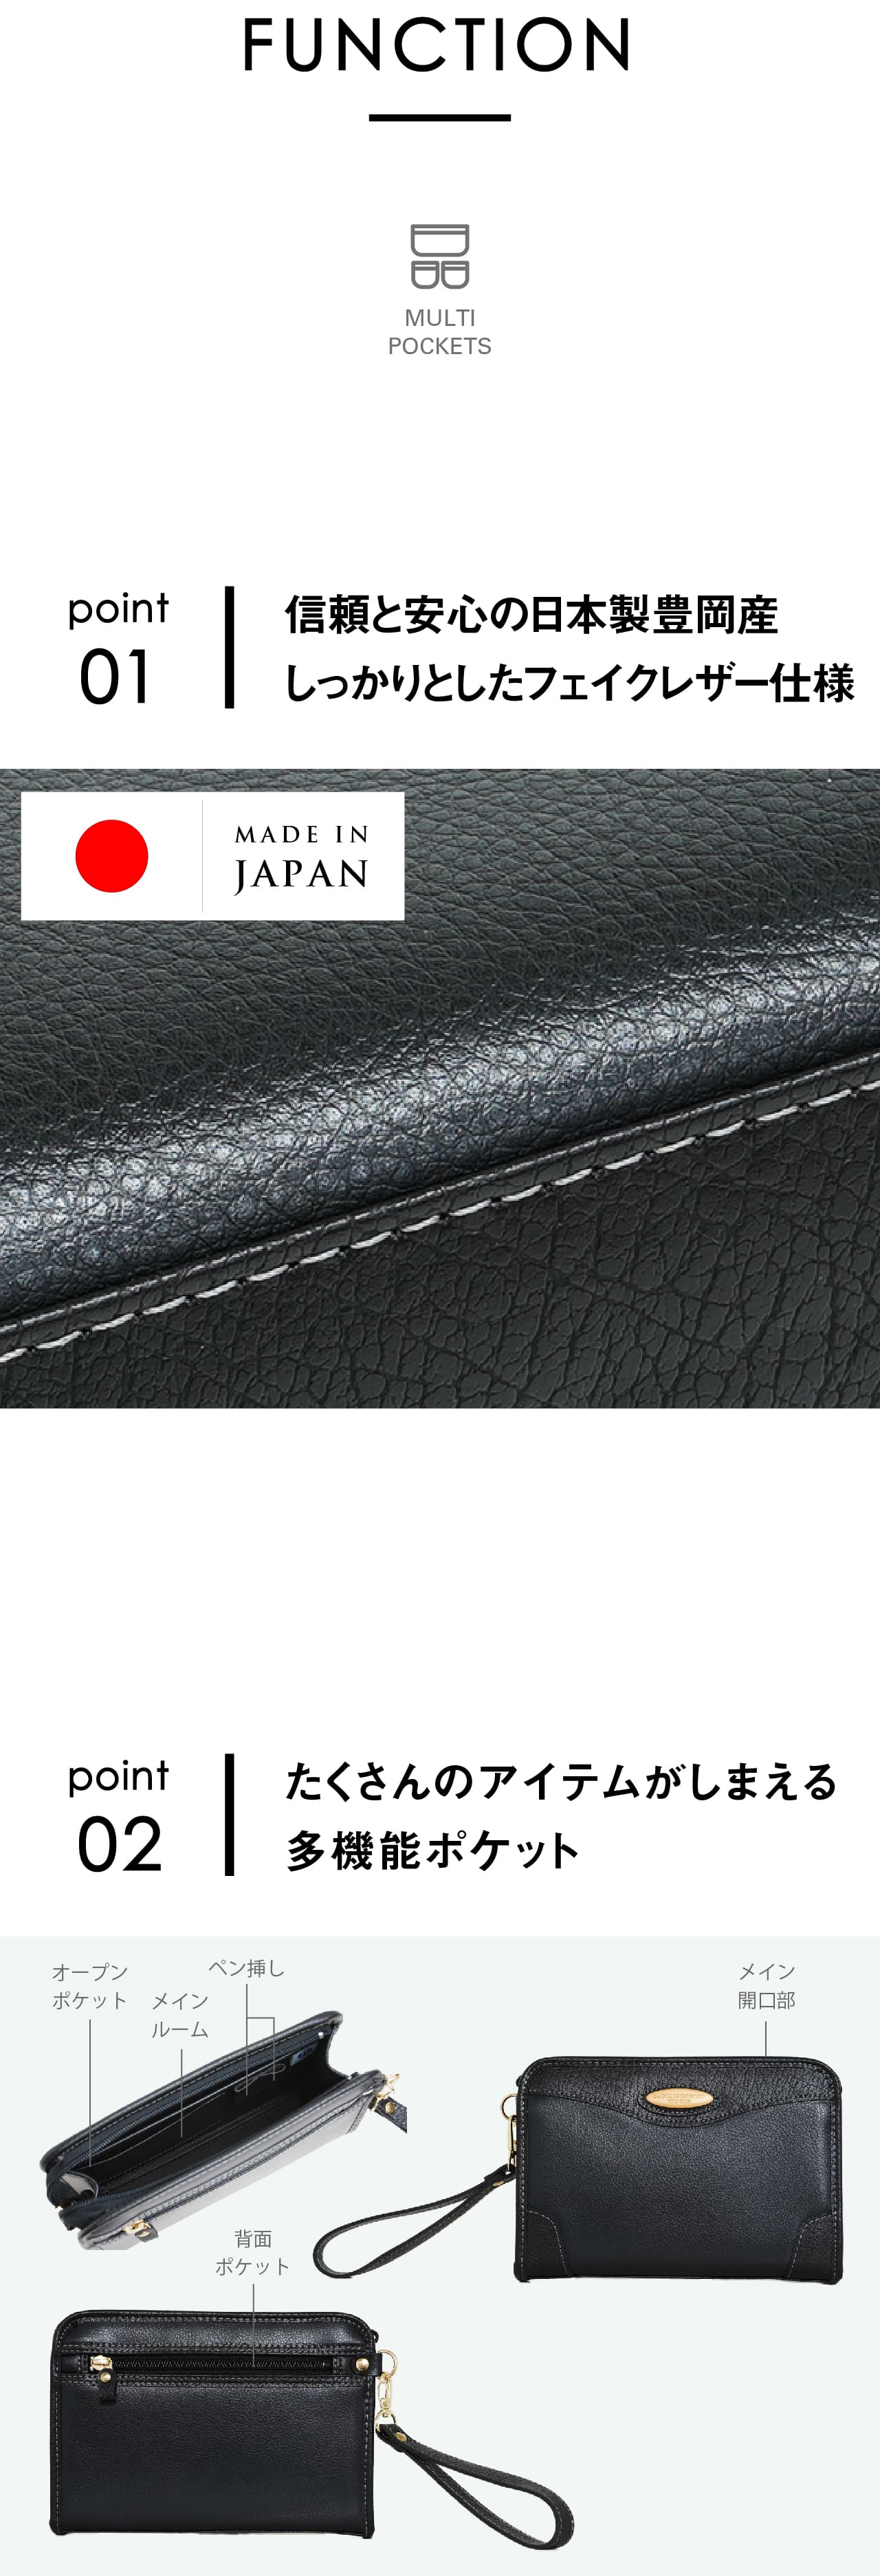 C.U.P.C セカンドバッグ 日本製 Sサイズ ケンブリッジユニバーシティポロクラブ PO-1133「信頼と安心の日本製豊岡産しっかりとしたフェイクレザー仕様」「たくさんのアイテムがしまえる多機能ポケット」